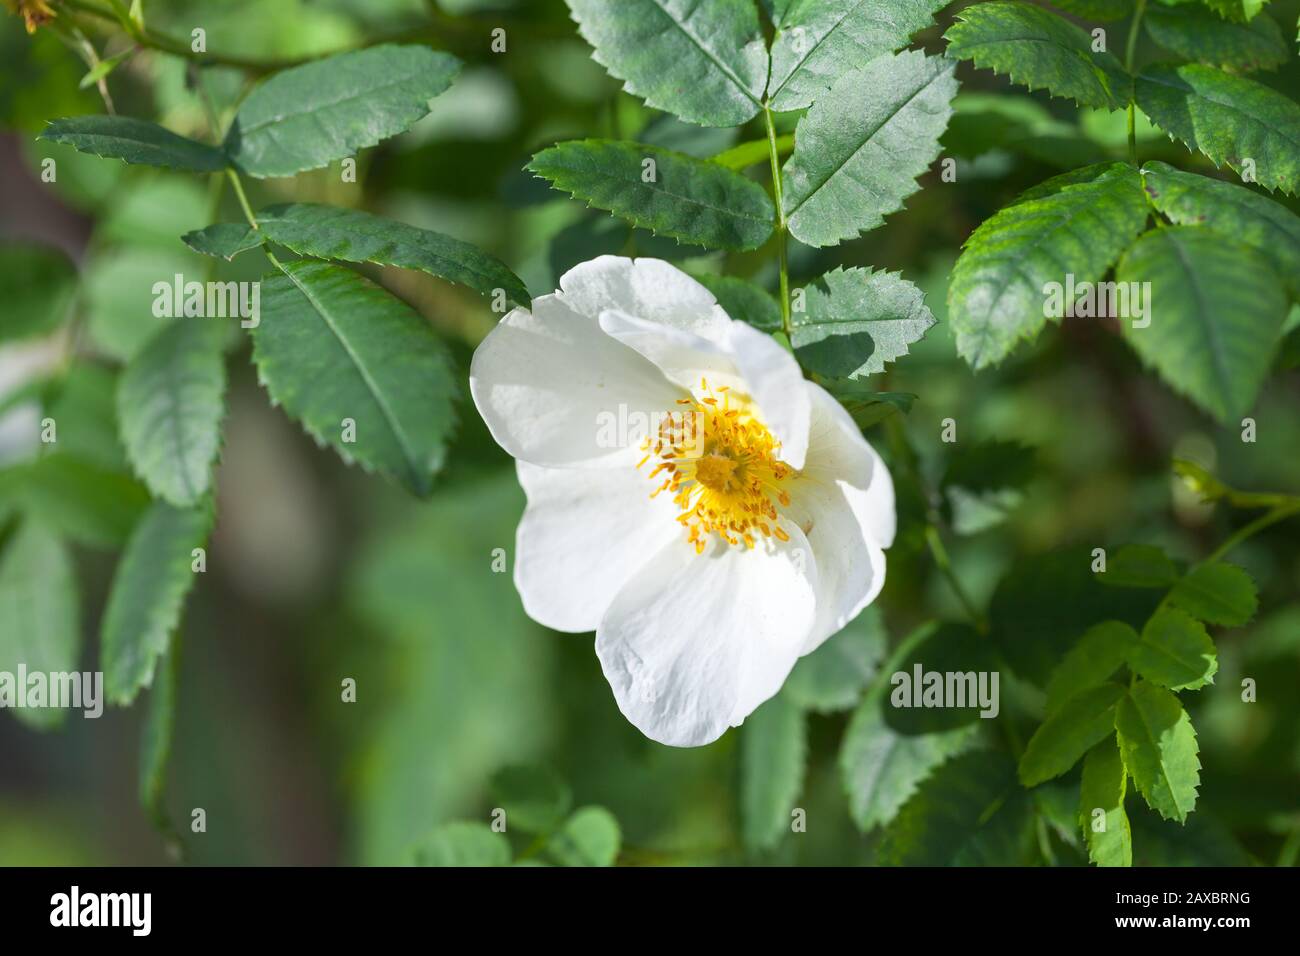 Rosa rubiginosa. Weiße Wildroseblüume auf einem grünen Zweig im Sommergarten Stockfoto